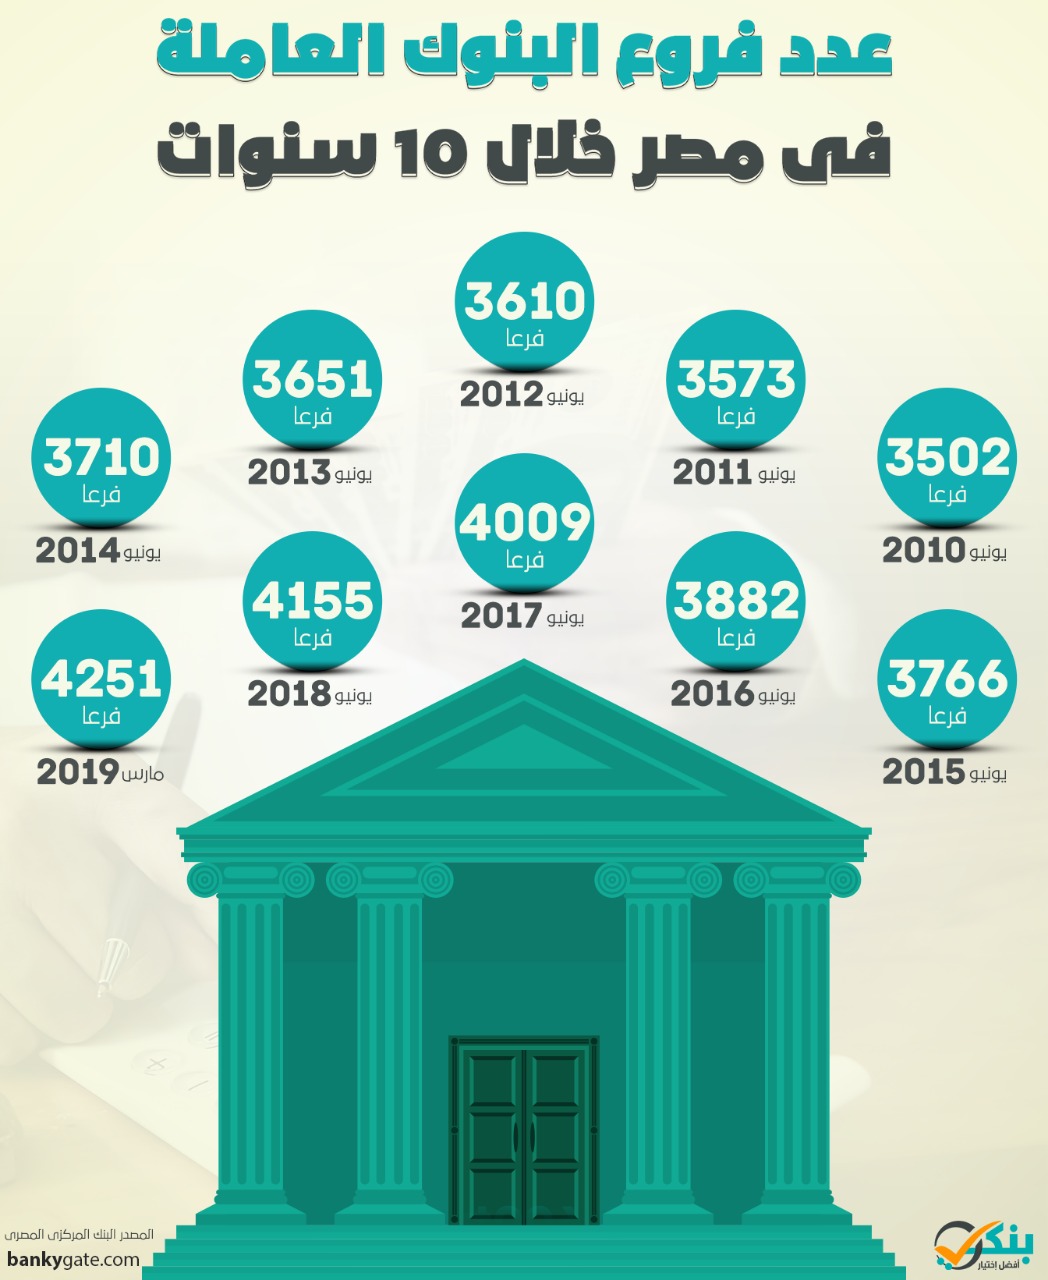 بنكي إنفوجرافيك تطور عدد فروع البنوك في مصر خلال 10 سنوات